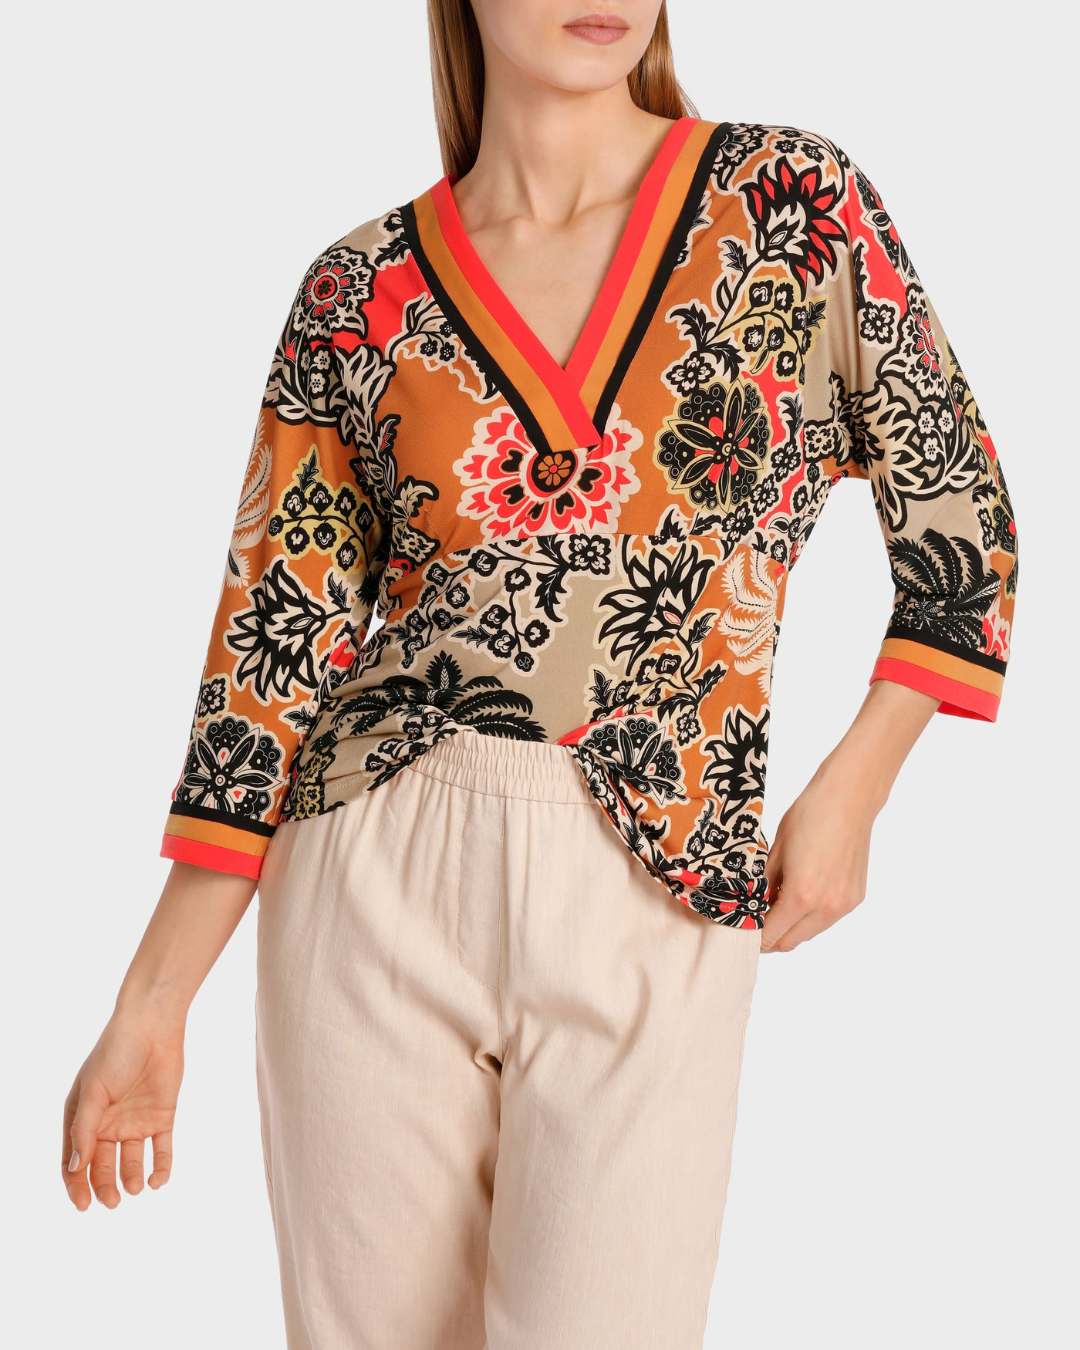 Kimono Blouse In A-line